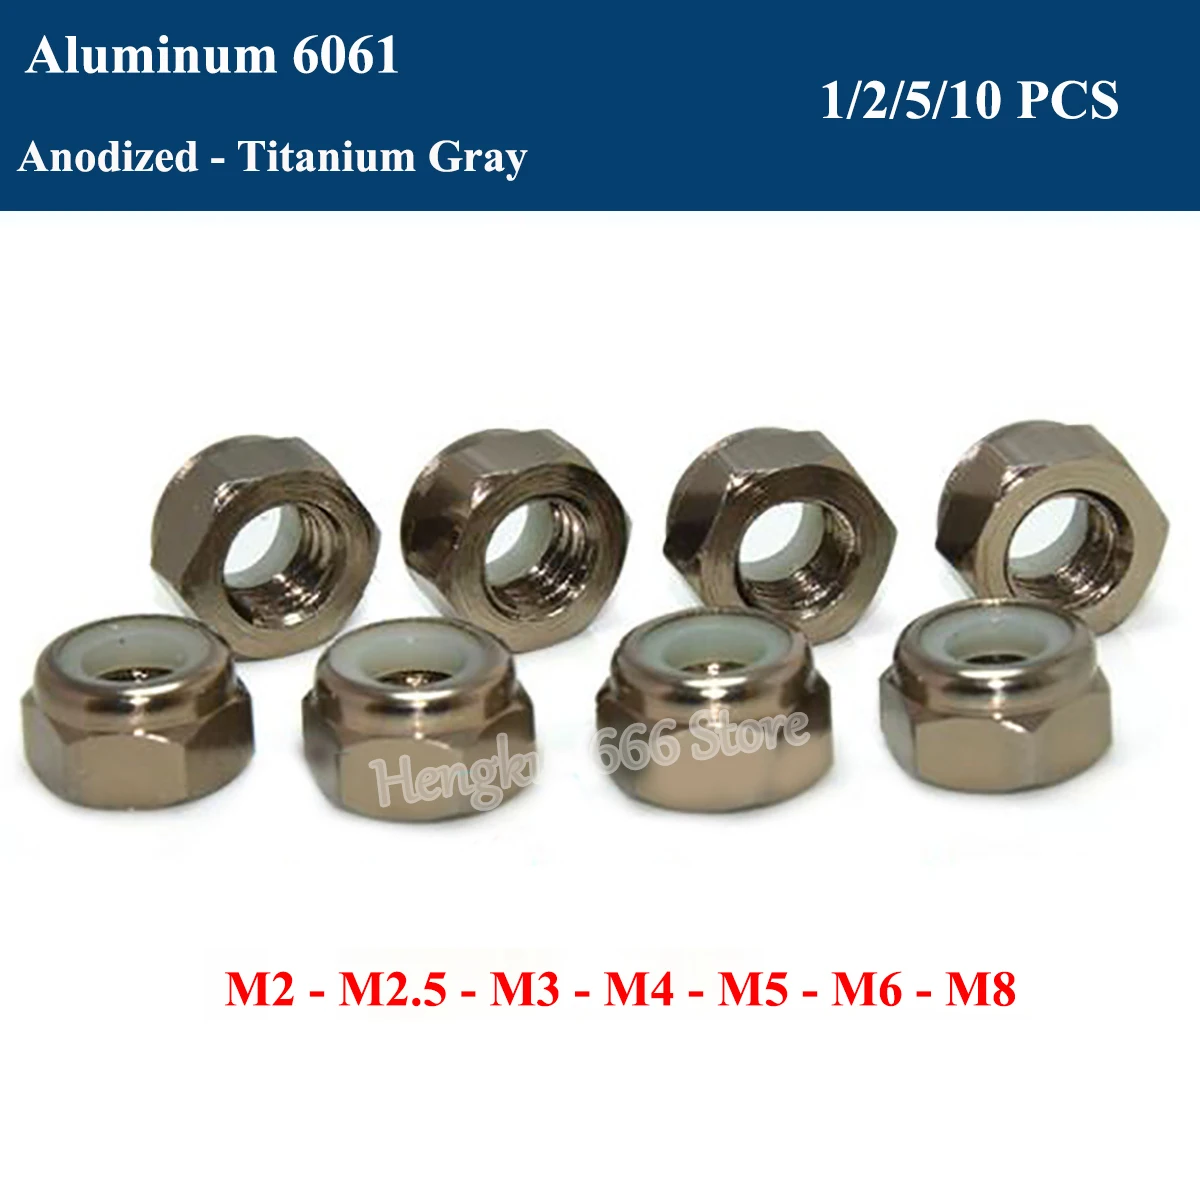 15 Pieces M4 Titanium Gray Hex Nylon Lock Nut Aluminum